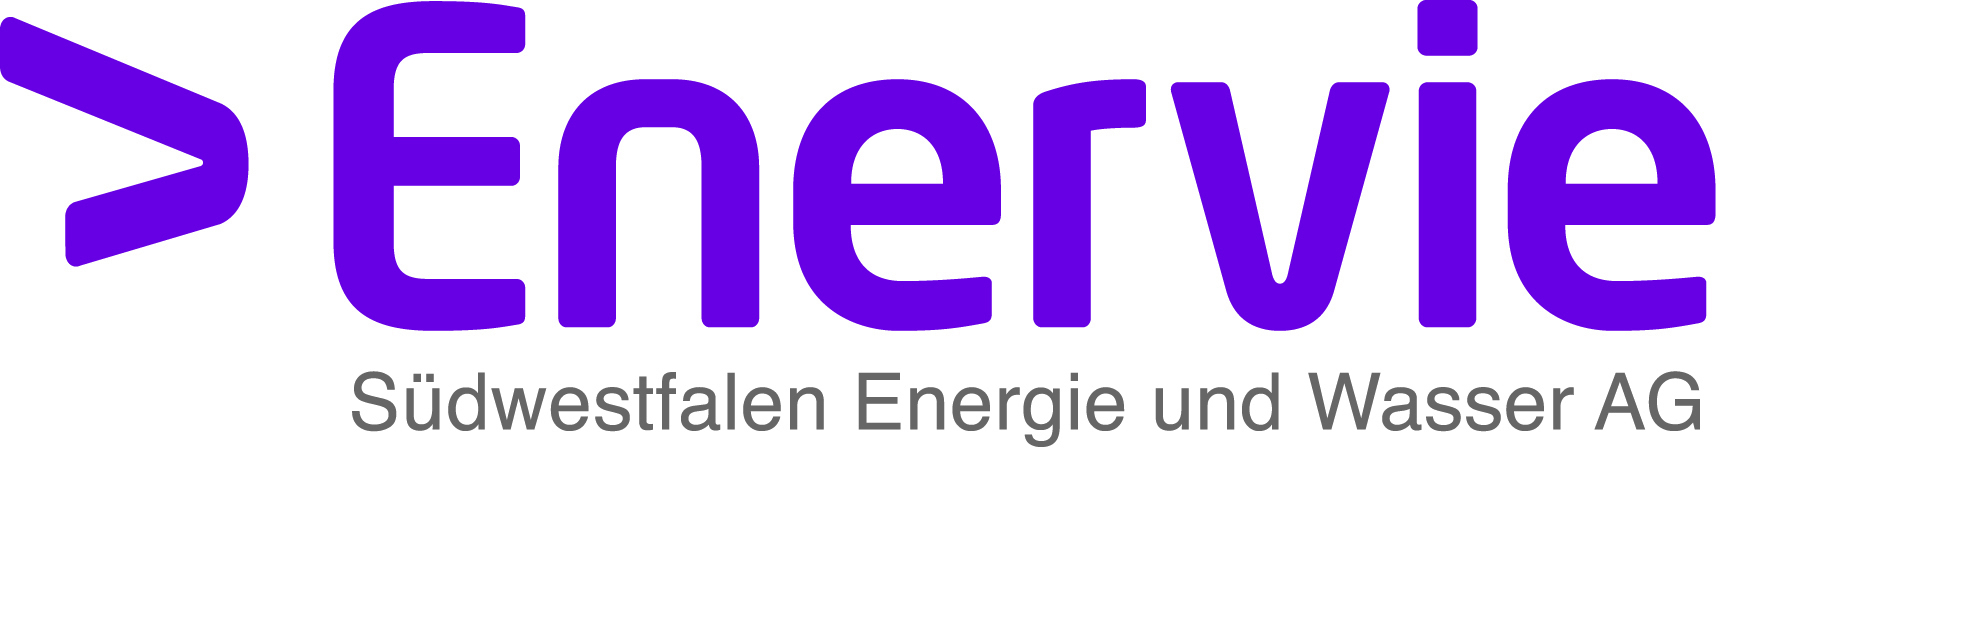 Unternehmensverbund - Strom, Gas, Wasser, Energiedienste für mehr als  400.000 Kunden - Logos